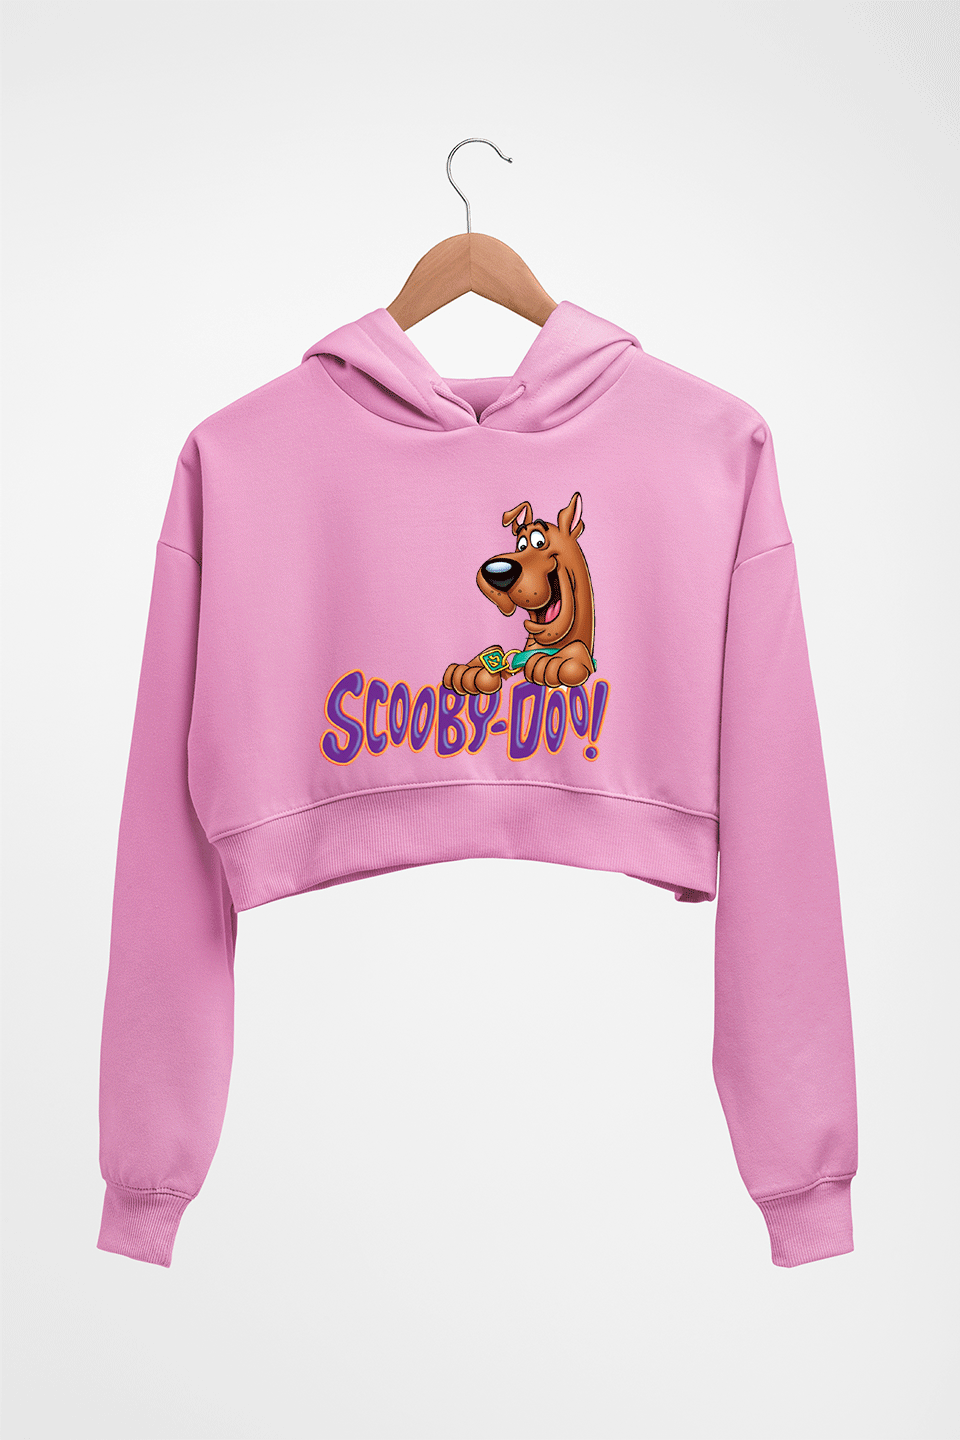 Scooby Doo Crop HOODIE FOR WOMEN